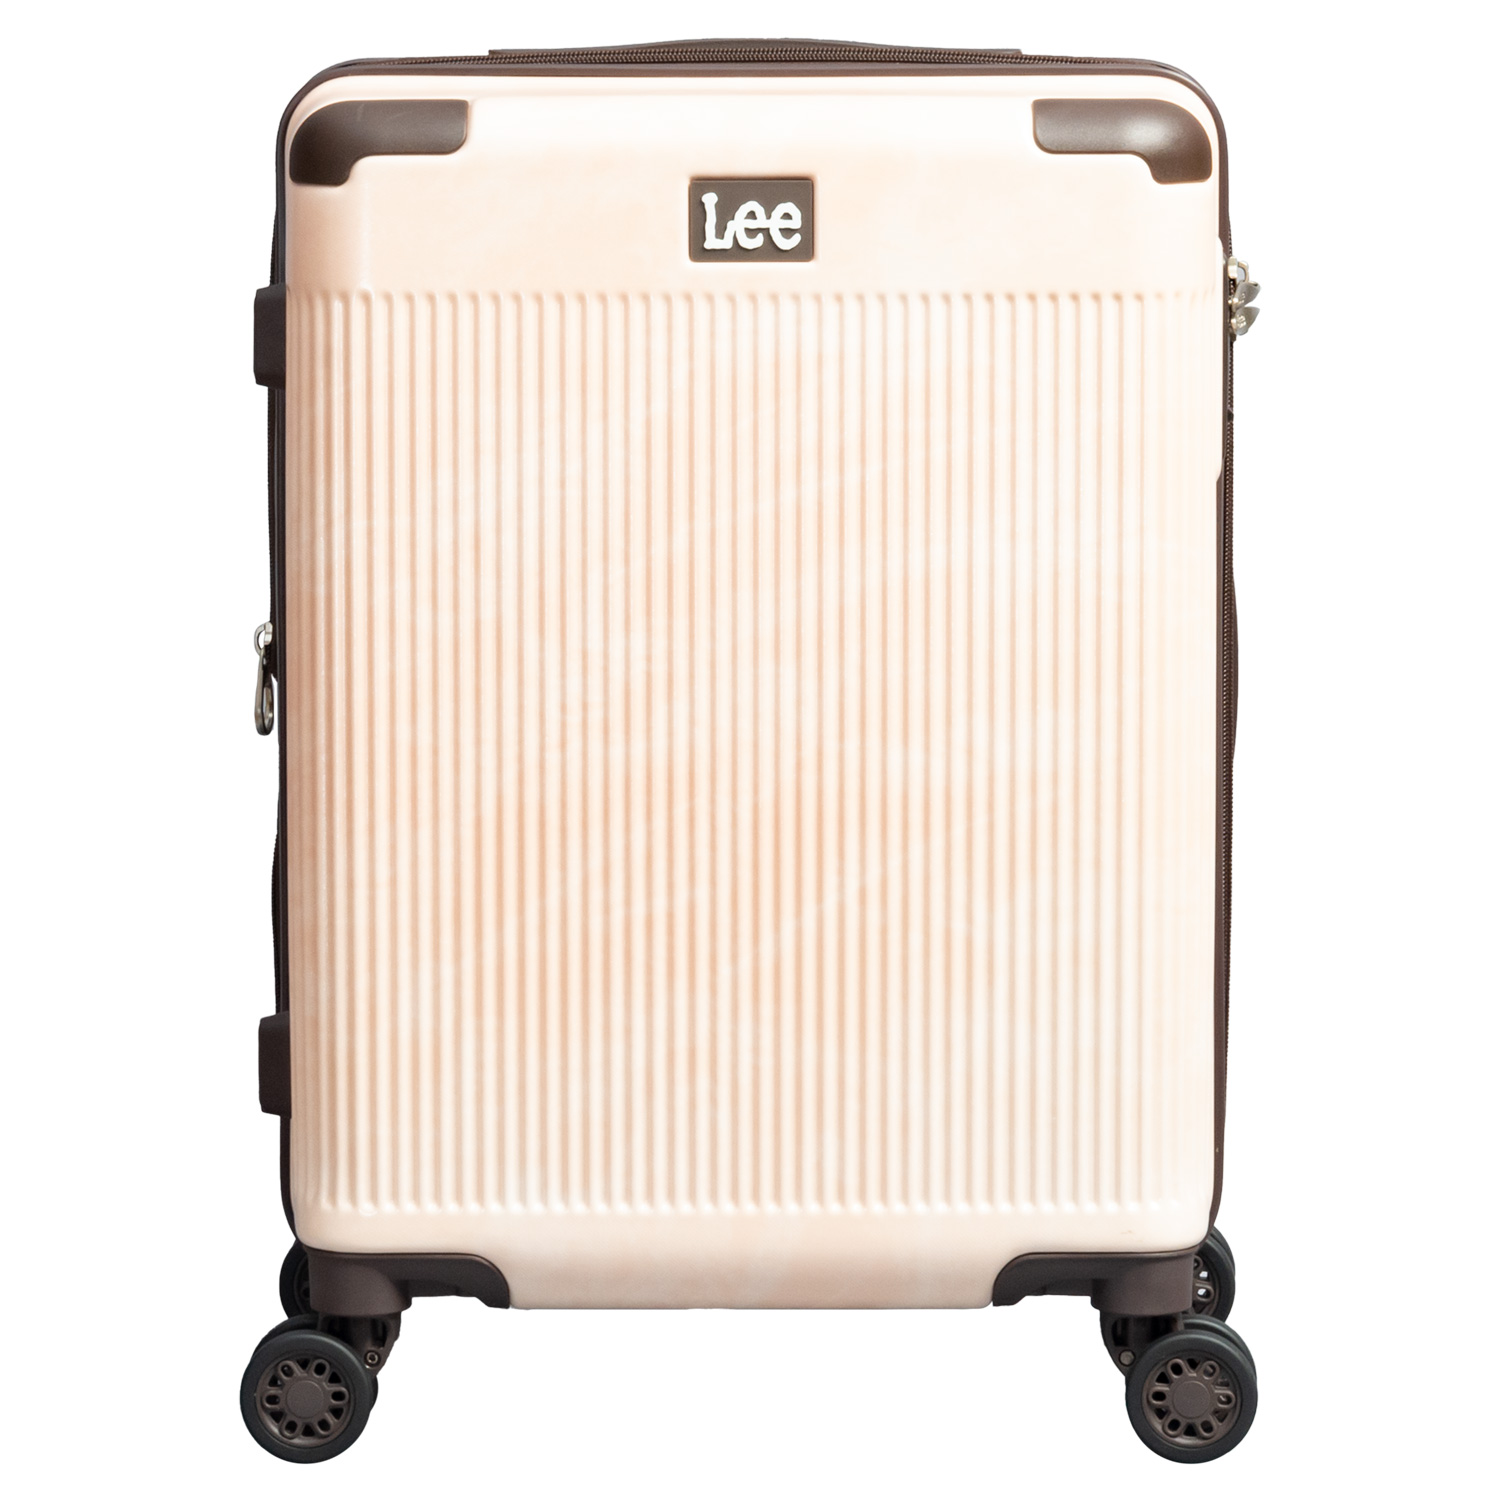 Lee スーツケース メンズ レディース 38-47L 機内持ち込み SSサイズ 拡張可能 TSAロ...